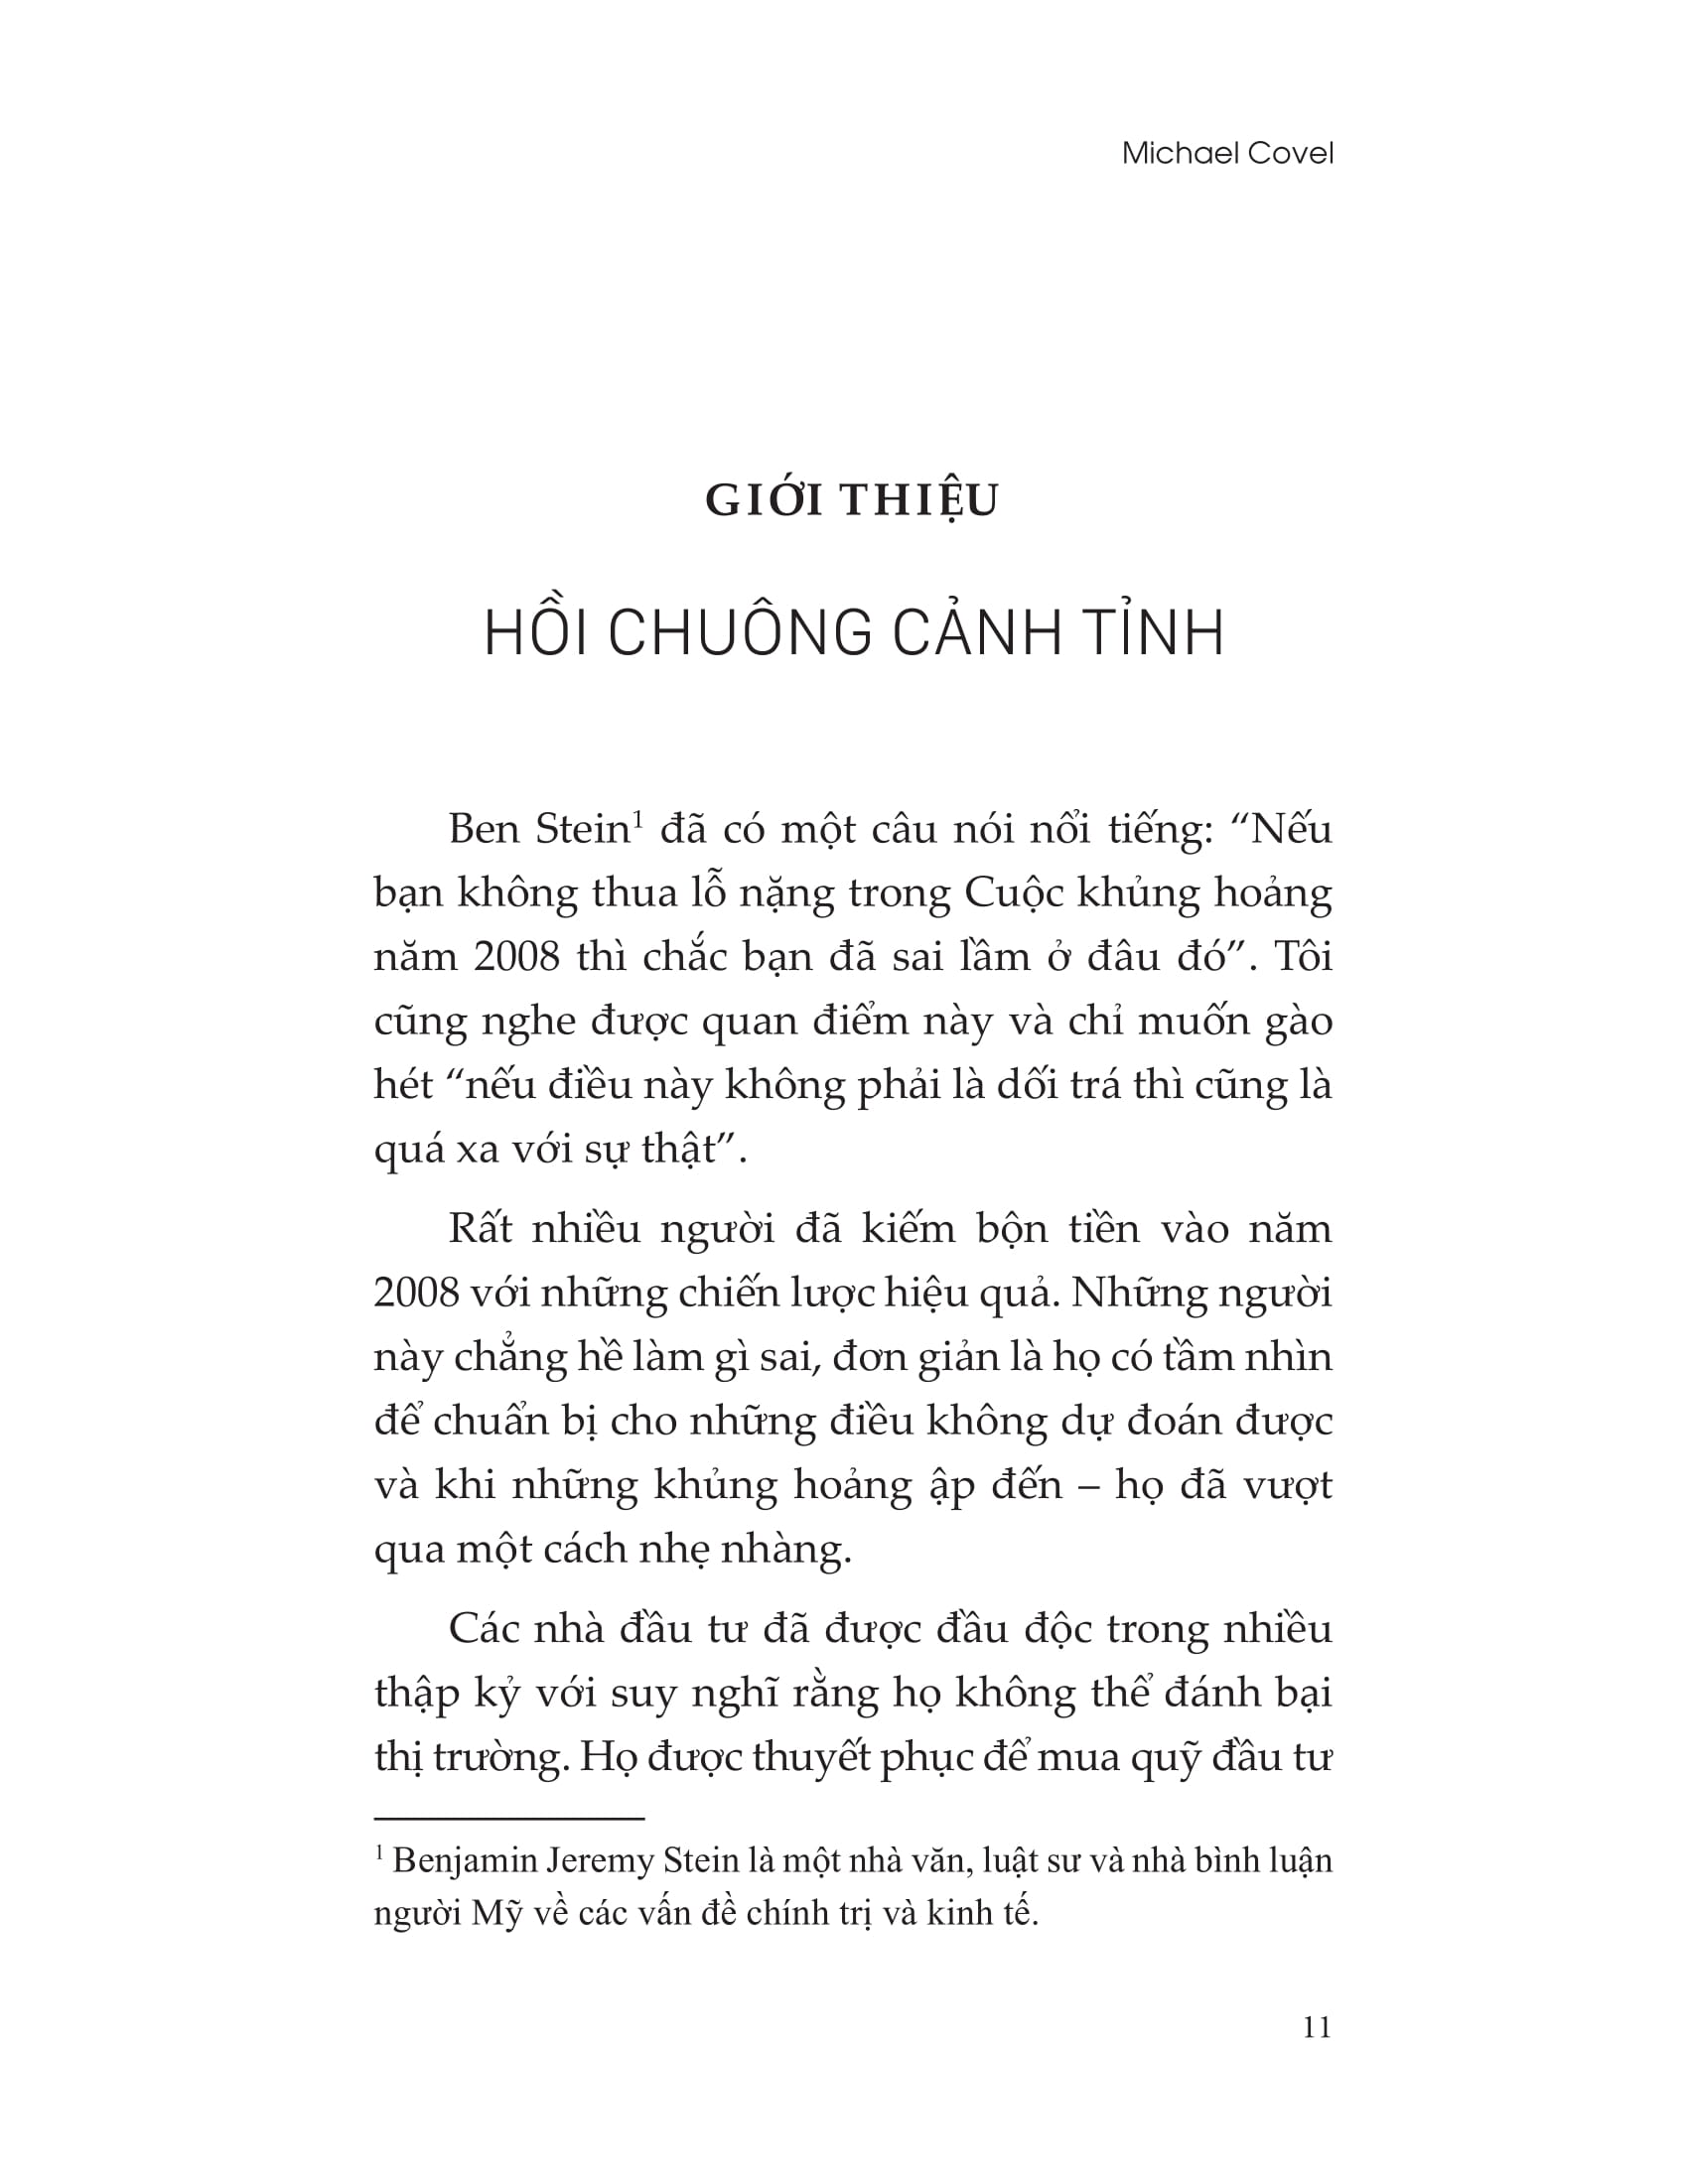 The Little Book - Giao Dịch Theo Xu Hướng Như Một Chuyên Gia PDF